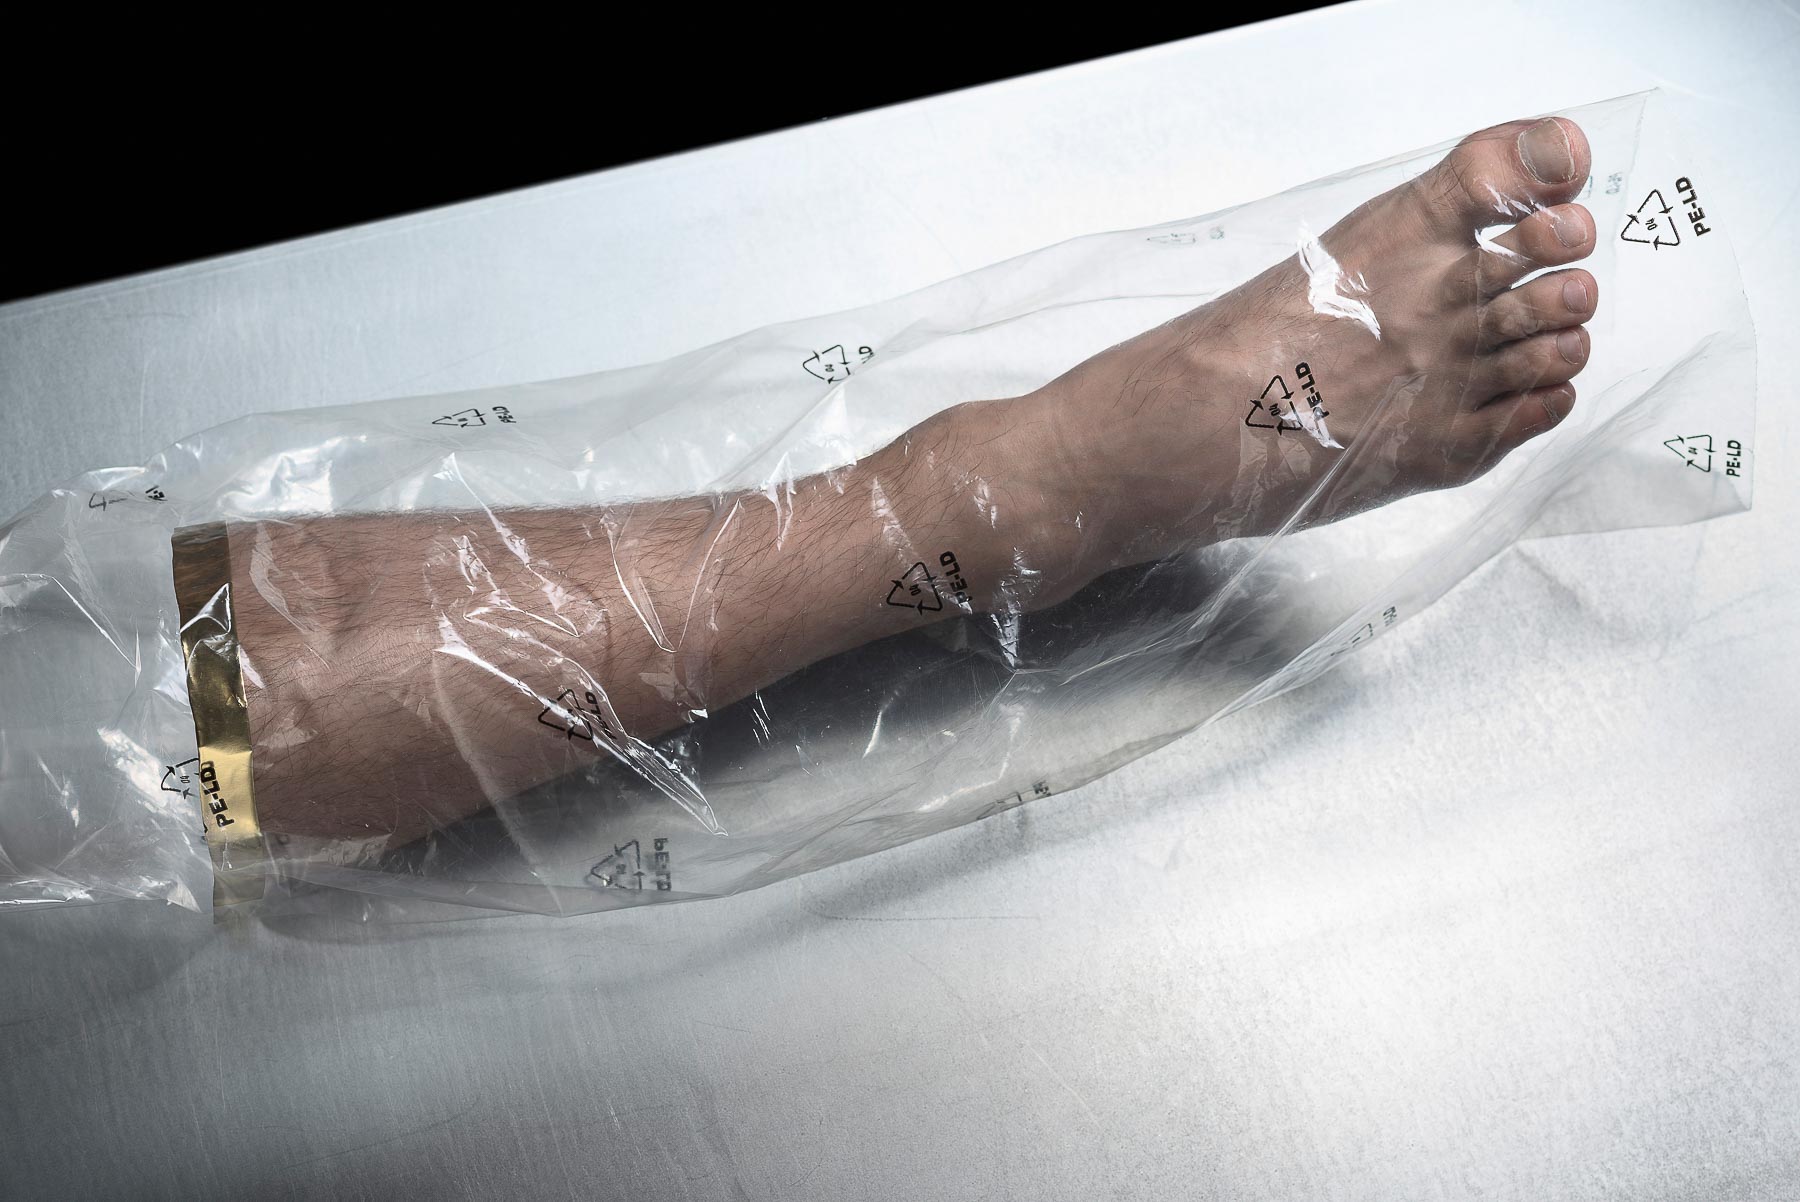 Ein menschlicher Fuß als Ersatzteil. Eine Protese der Biotechnologie der Zukunft? Science fiction